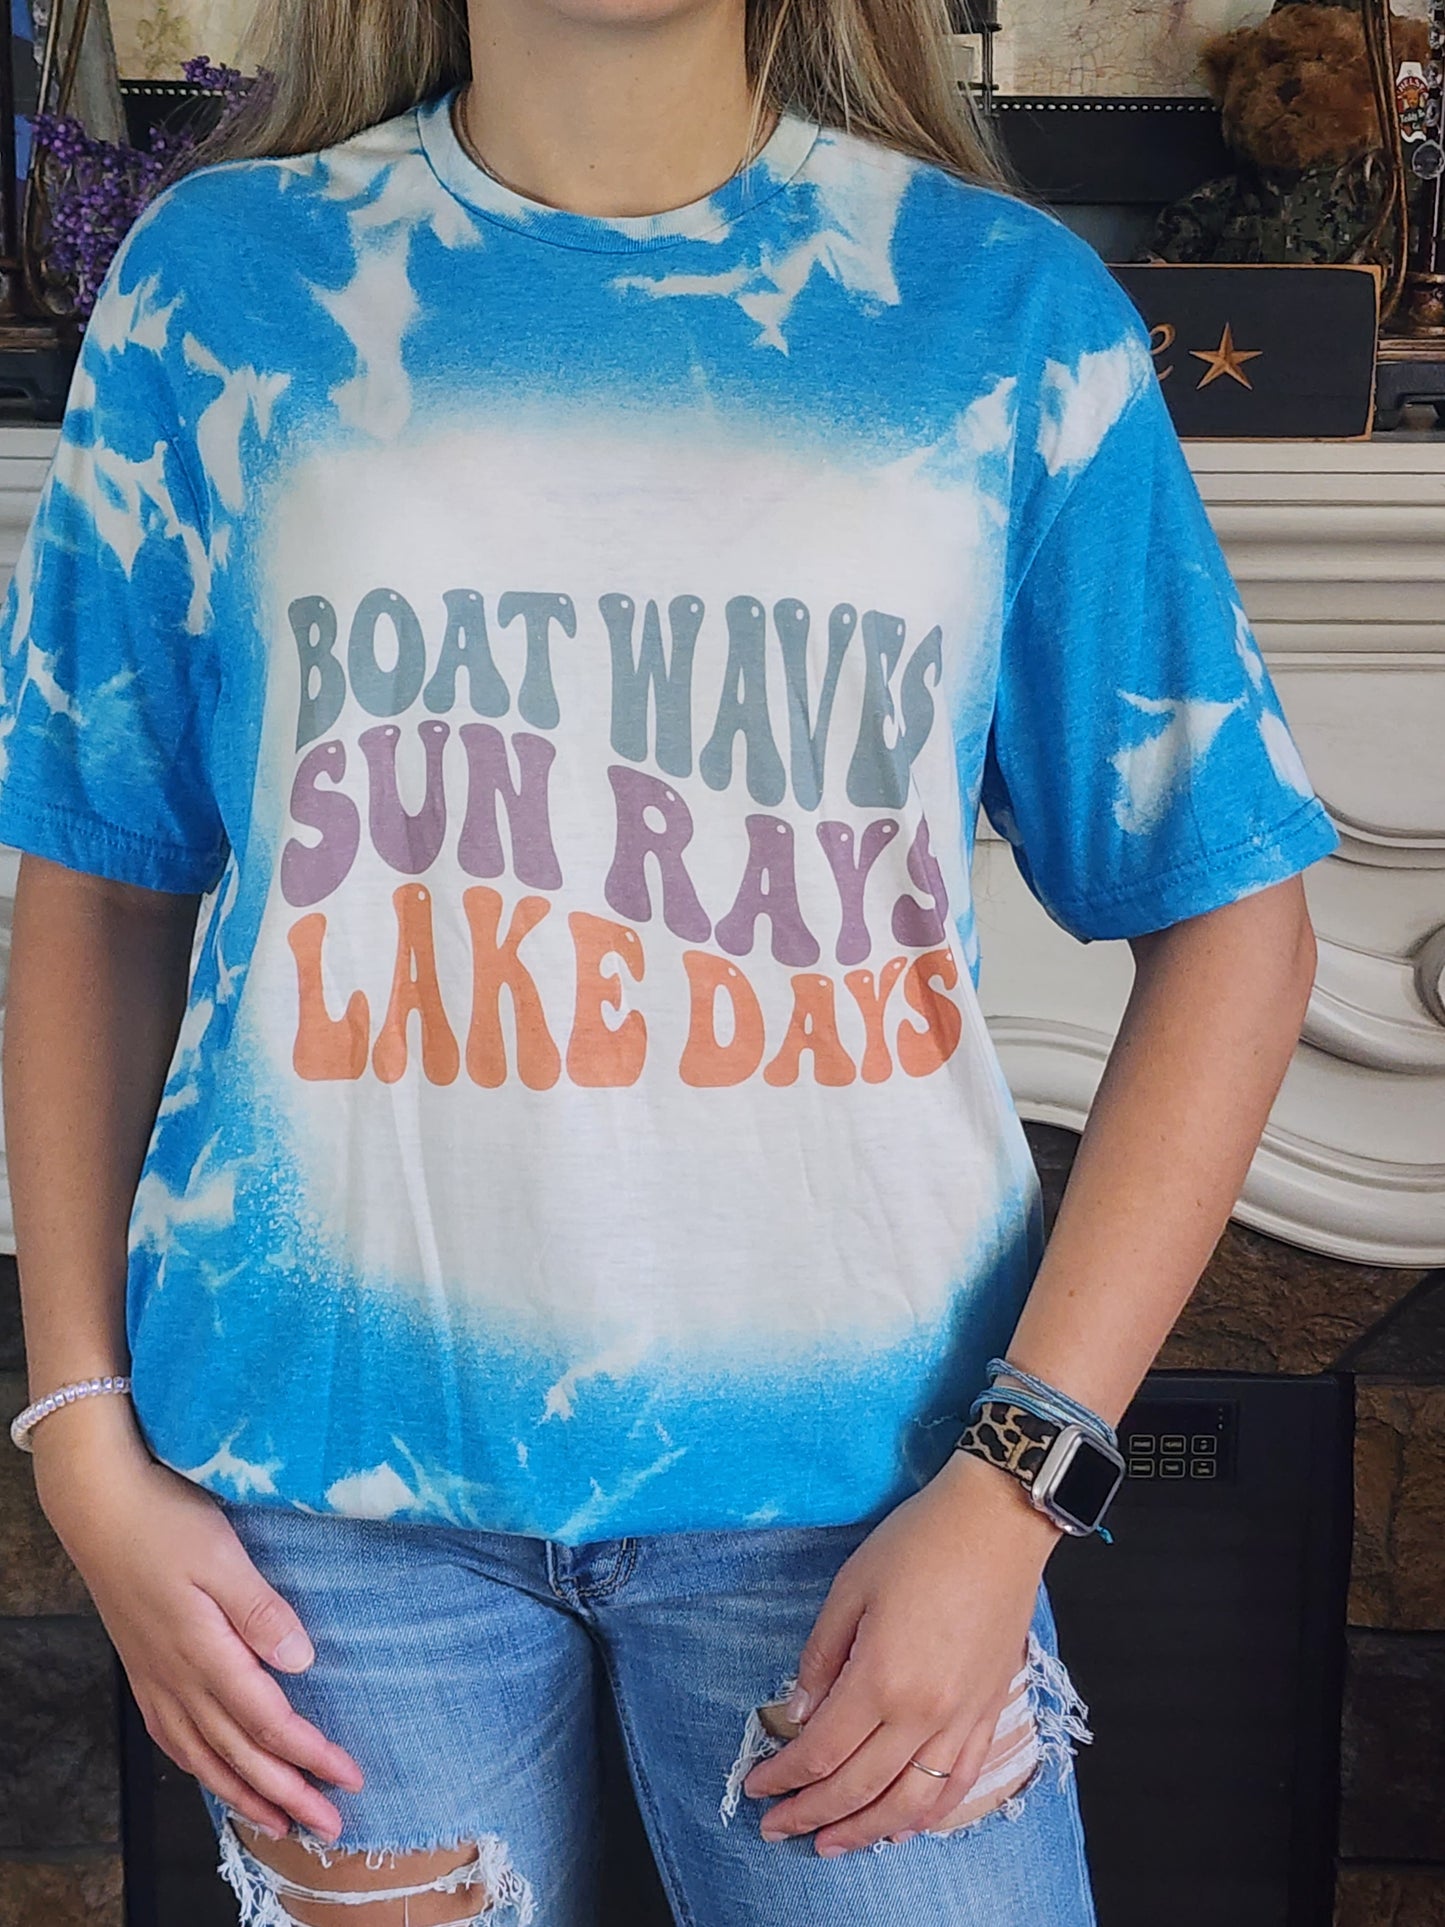 Boat Waves Sun Rays Lake Days - Sublimation Shirt